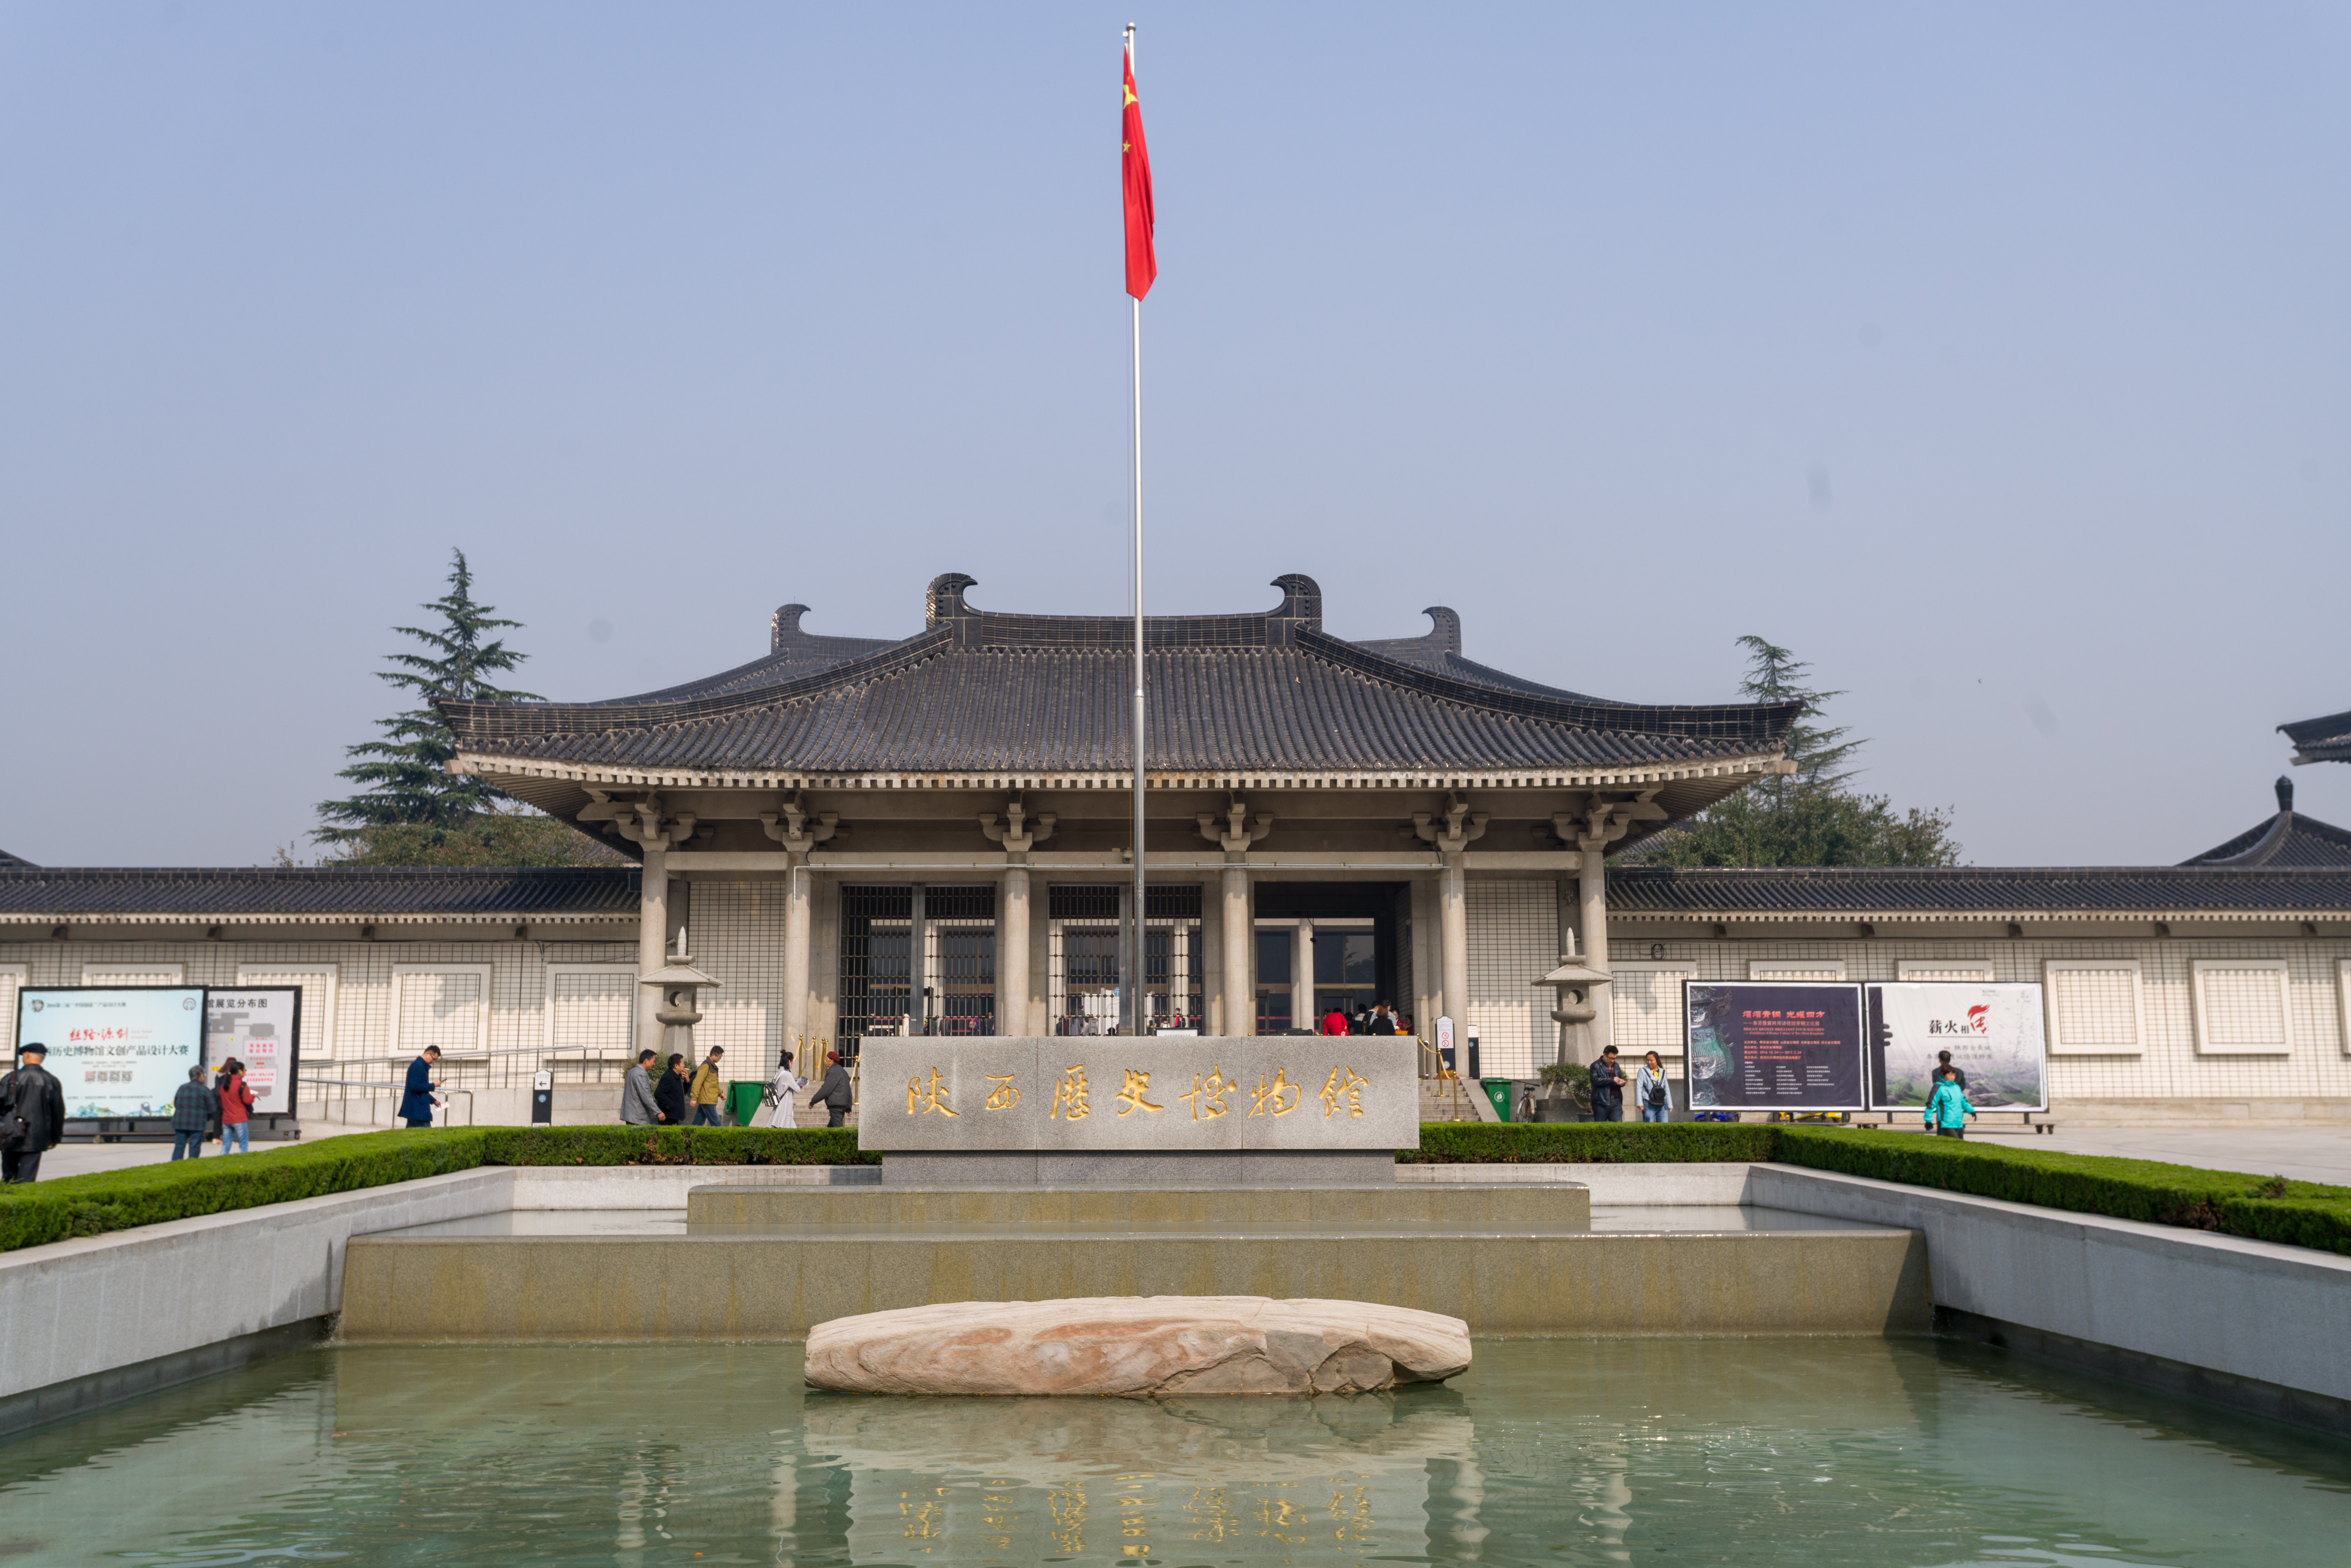 陕西历史博物馆 - 中国陕西西安景点